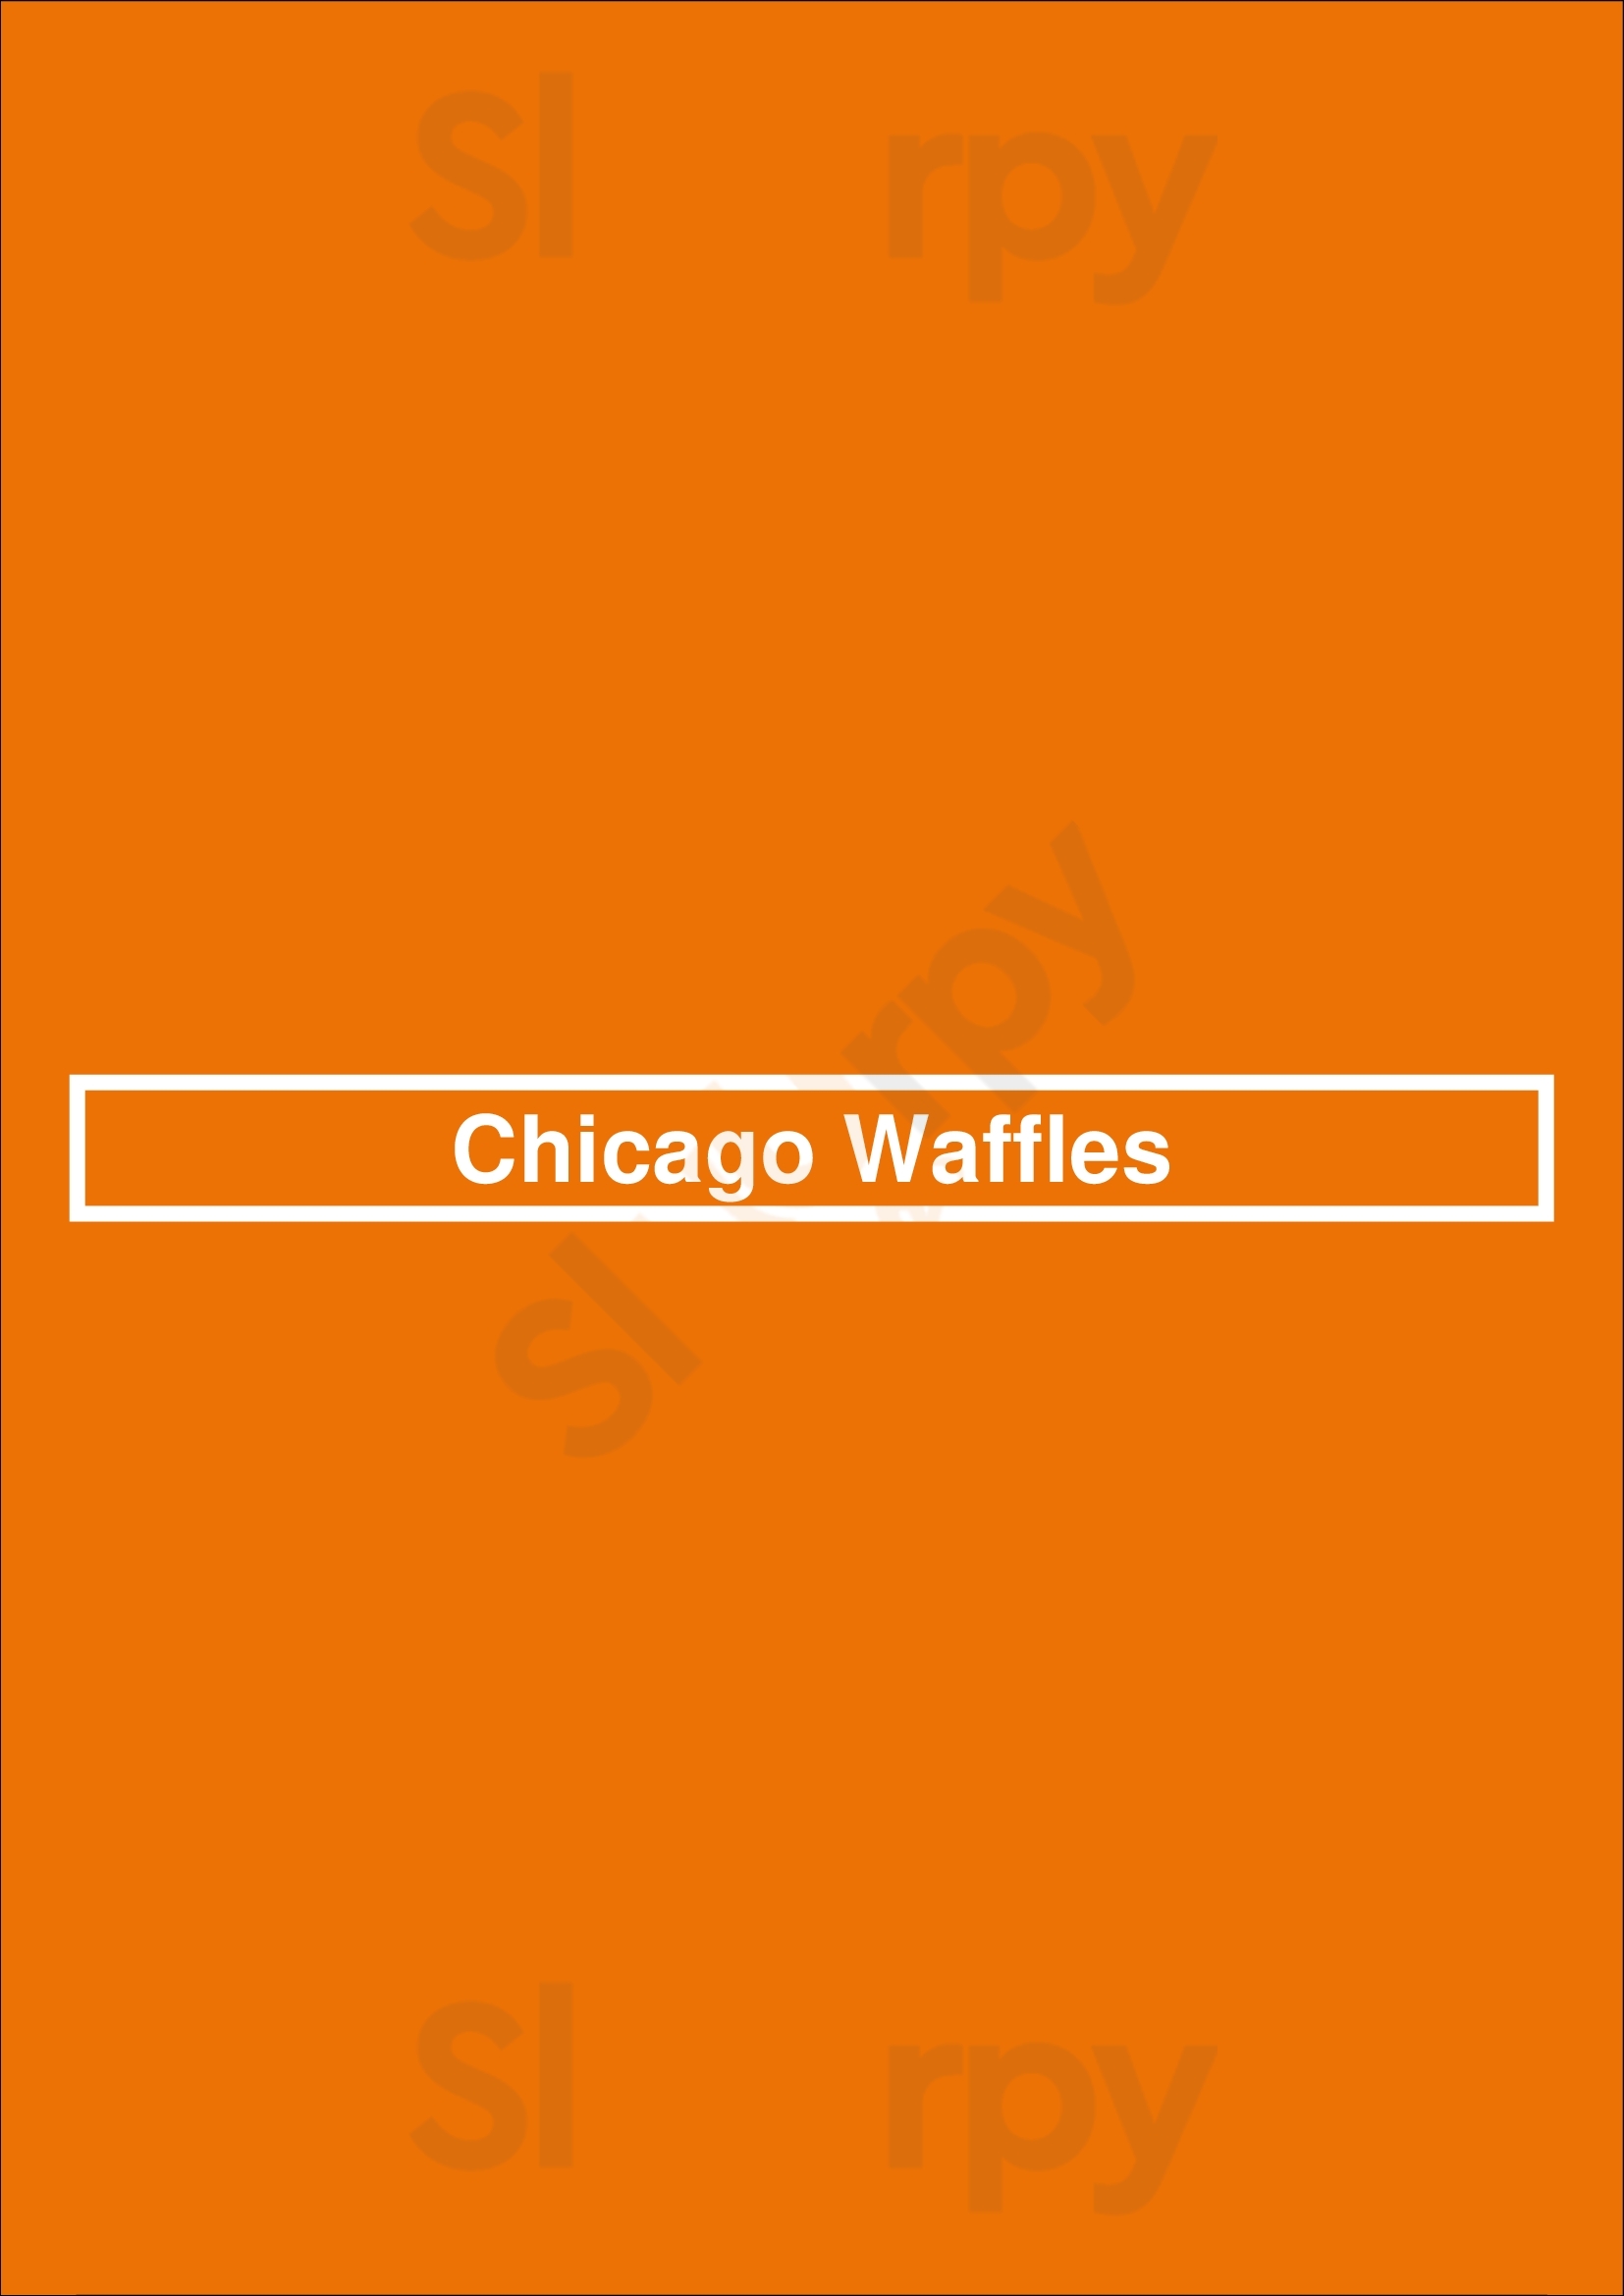 Chicago Waffles Chicago Menu - 1